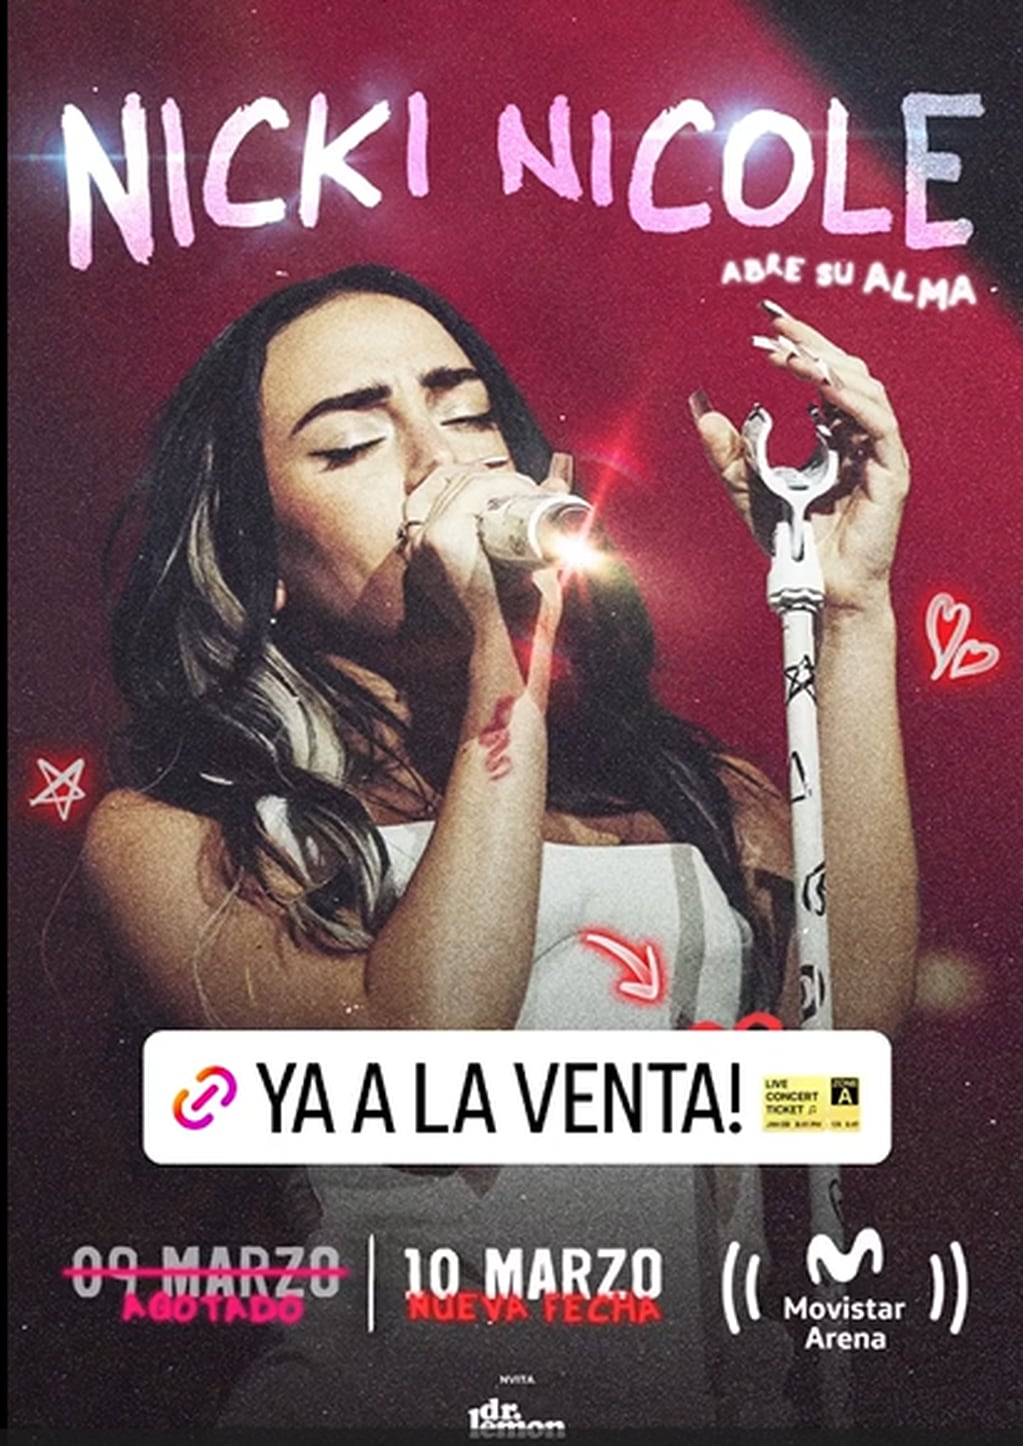 Nicki Nicole anunció su novena fecha en el Movistar Arena.